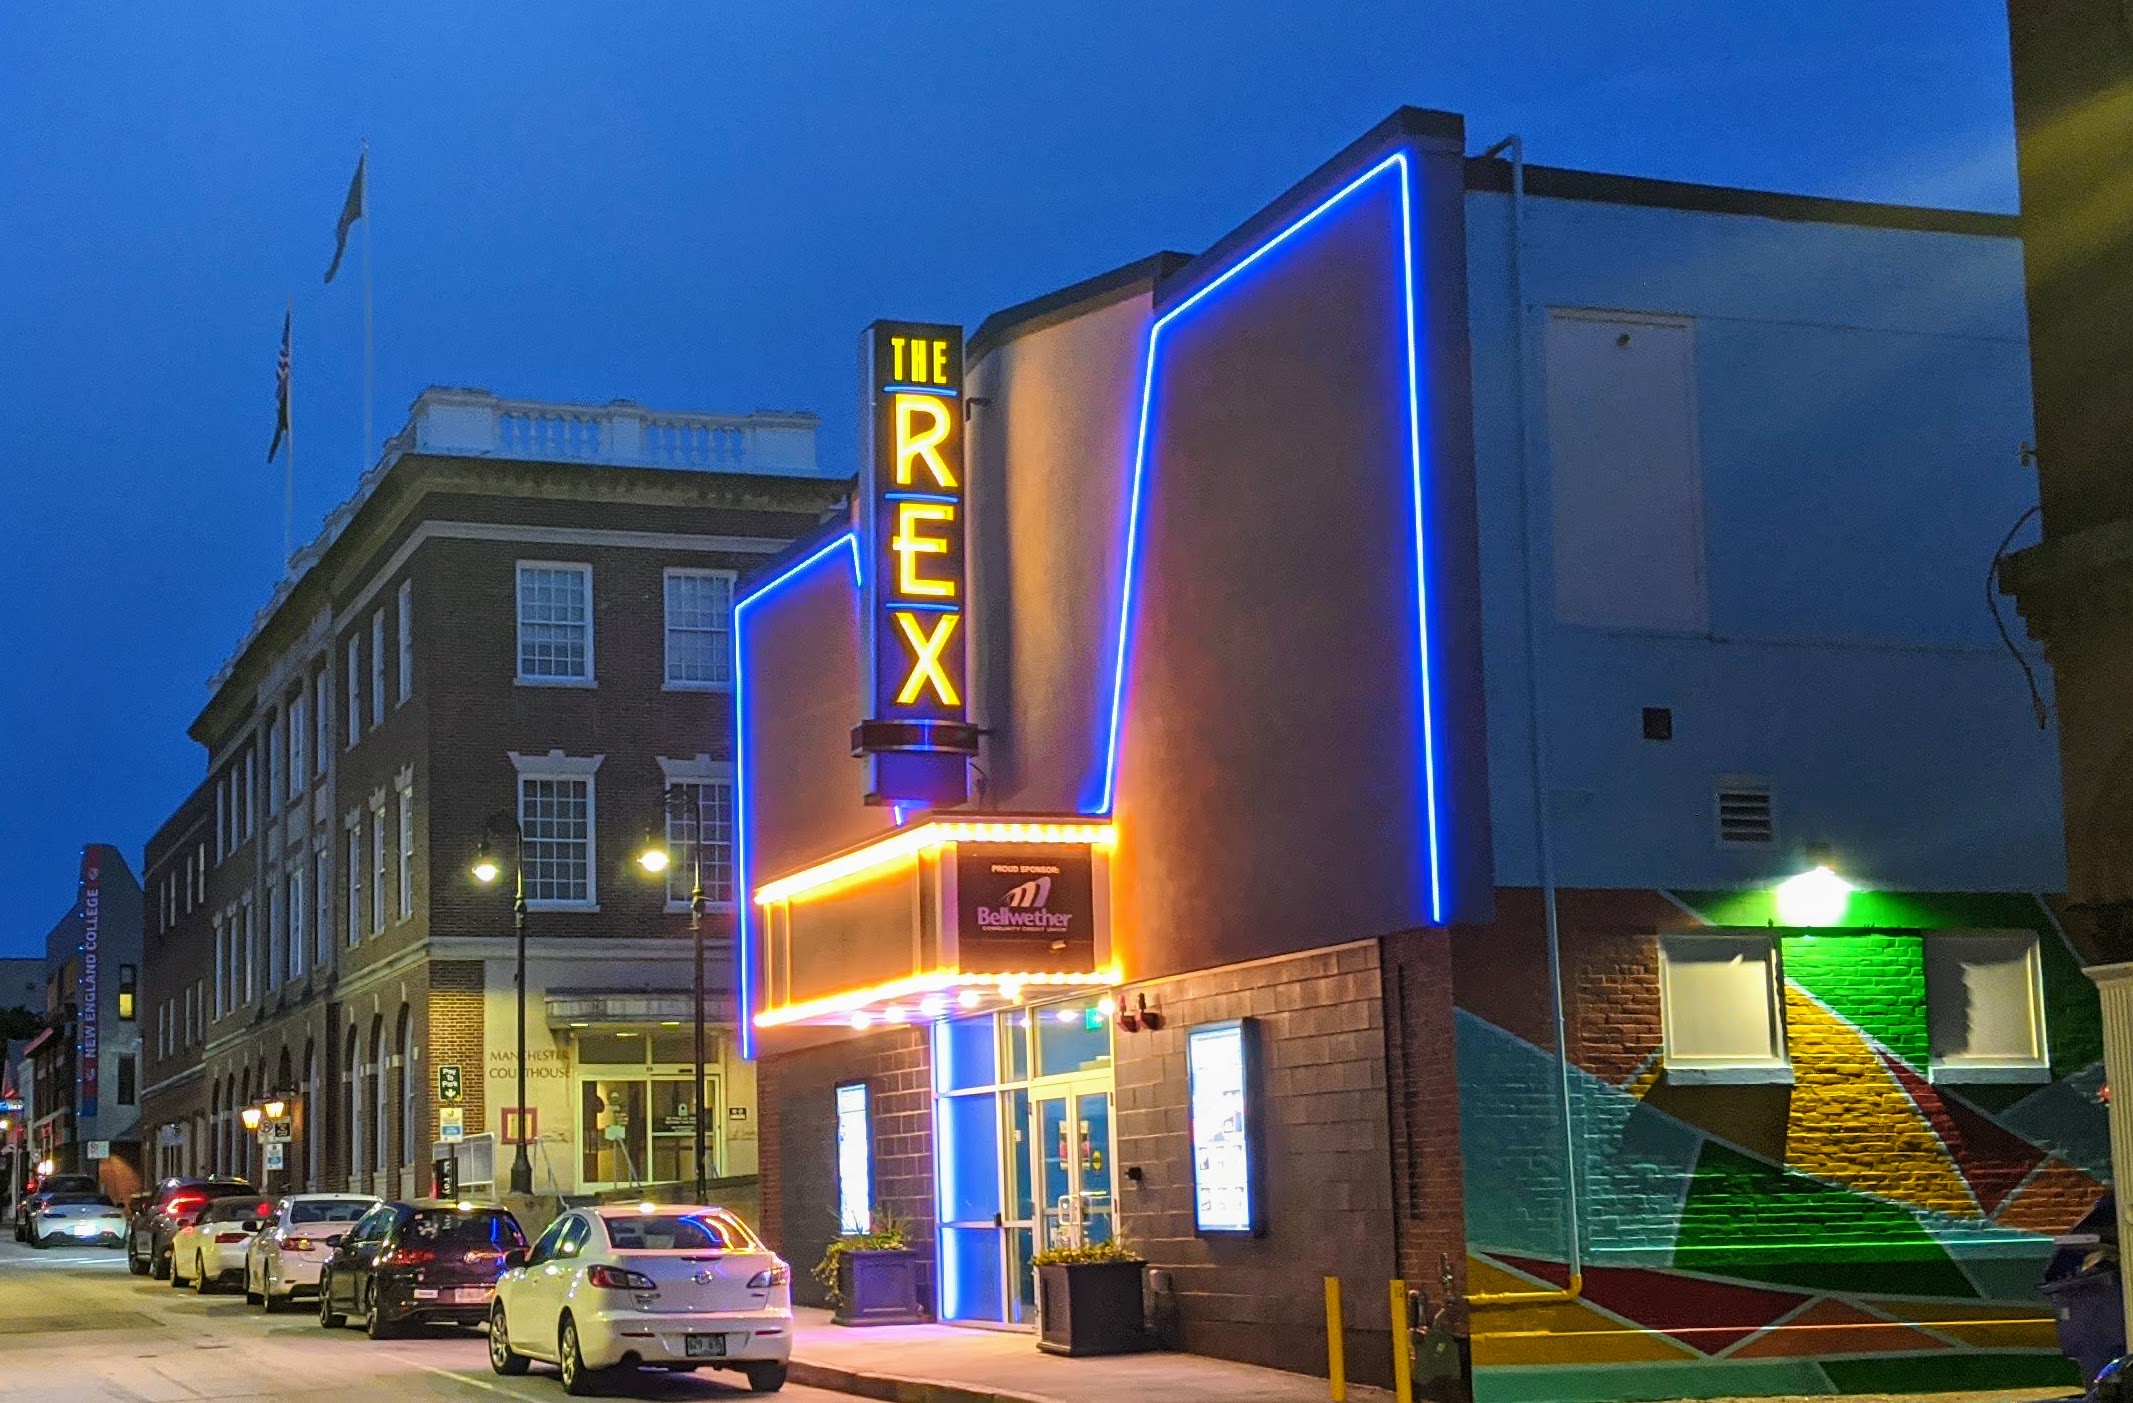 Rex Theatre, Manchester, NH